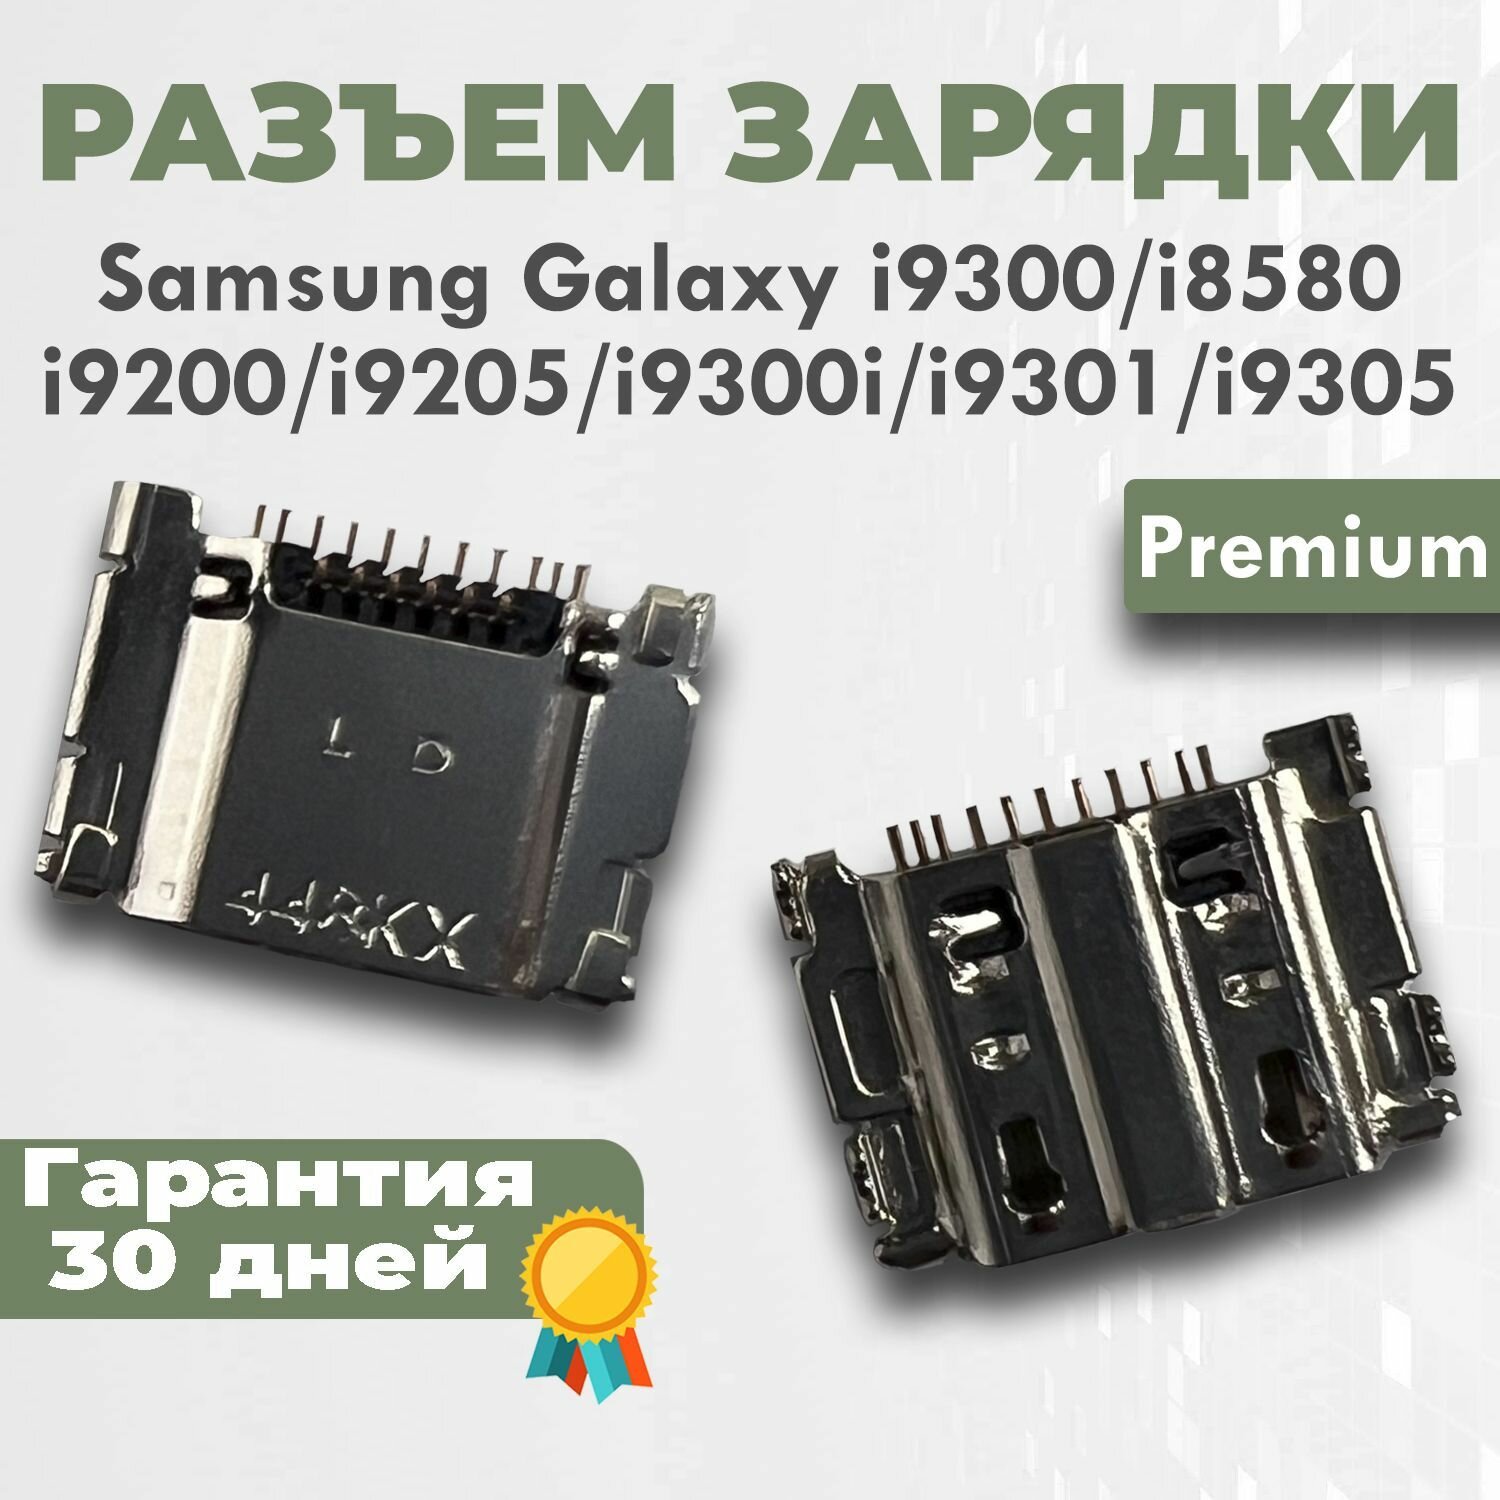 Разъем зарядки для Galaxy i9300, i8580, i9200, i9205, i9300i, i9301 i9305 Premium